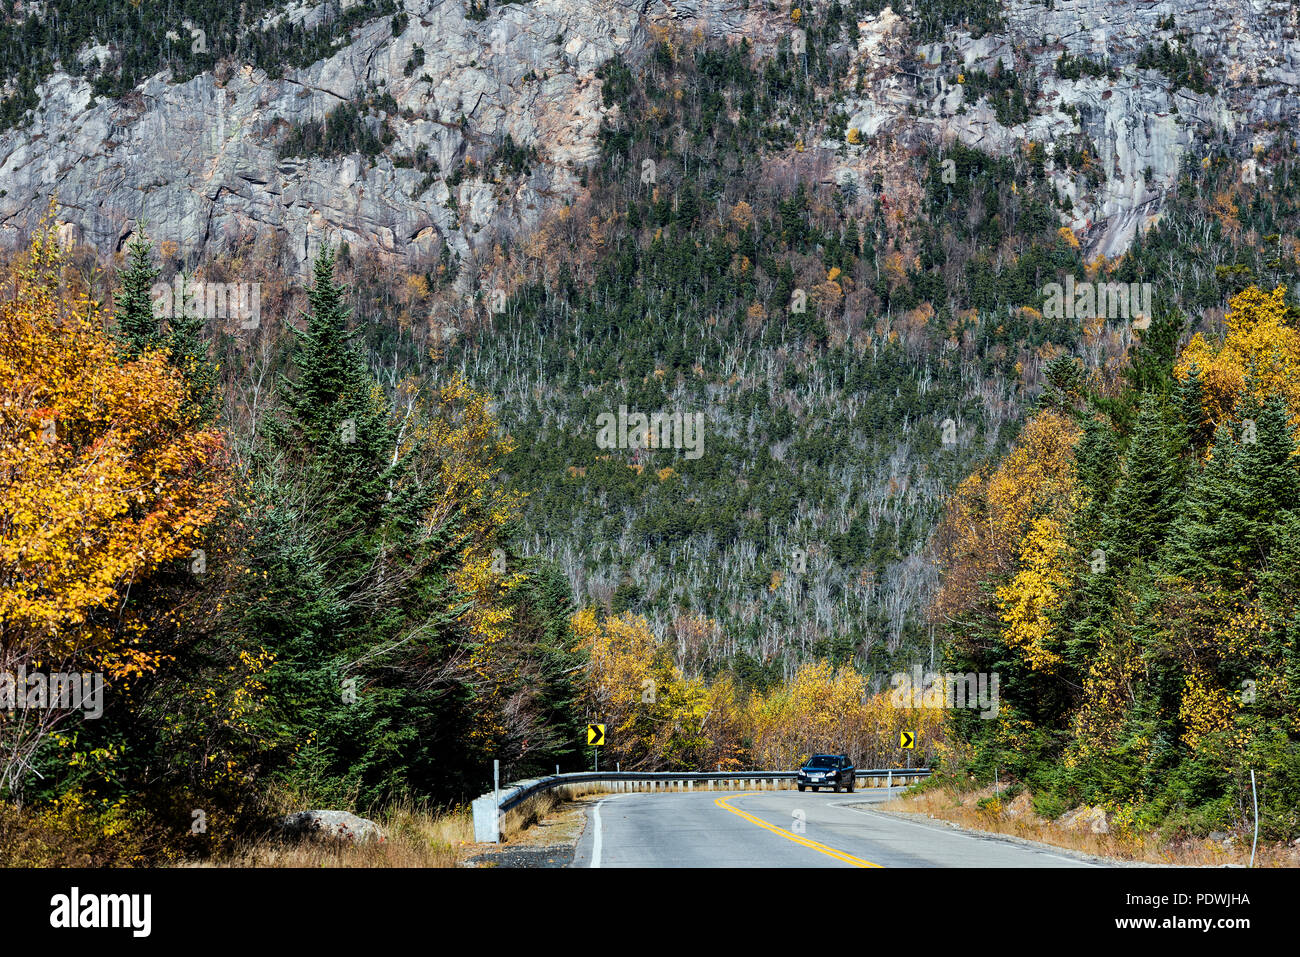 Conduciremos a través del bosque nacional, las Montañas Blancas de New Hampshire, Estados Unidos. Foto de stock